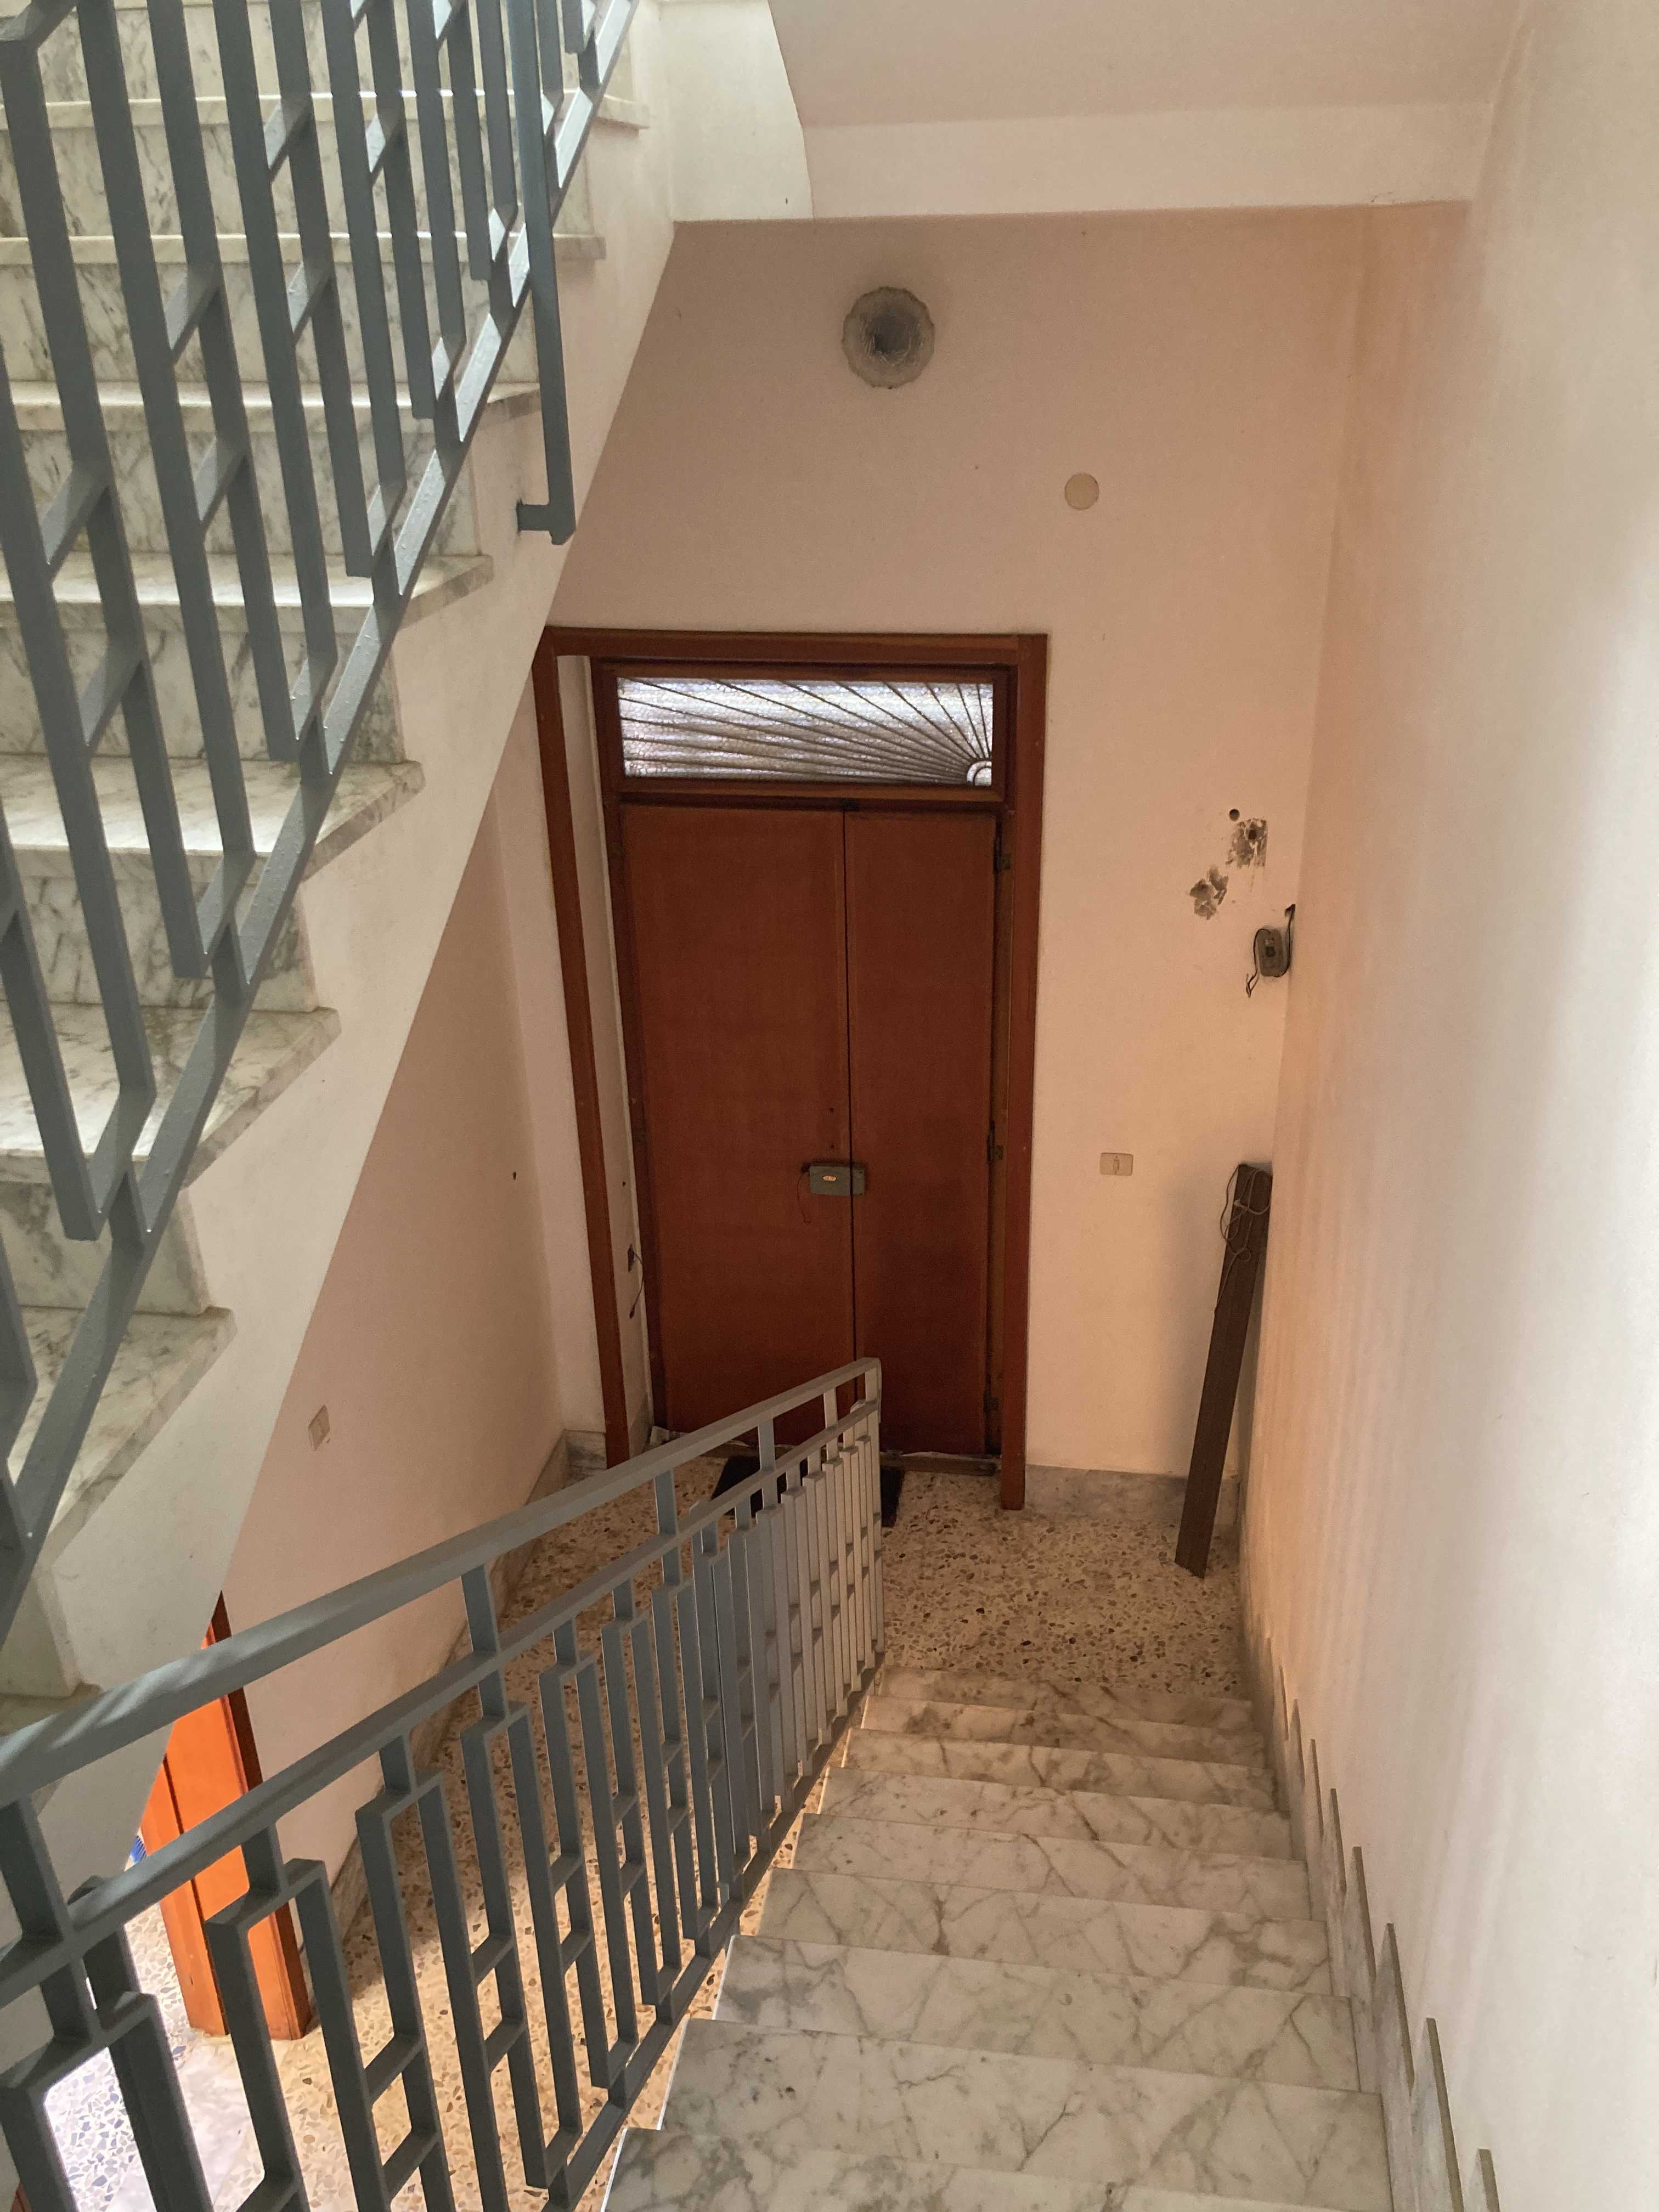 Vendite Salento: Vendita villa bifamiliare (Alessano) - ingresso2